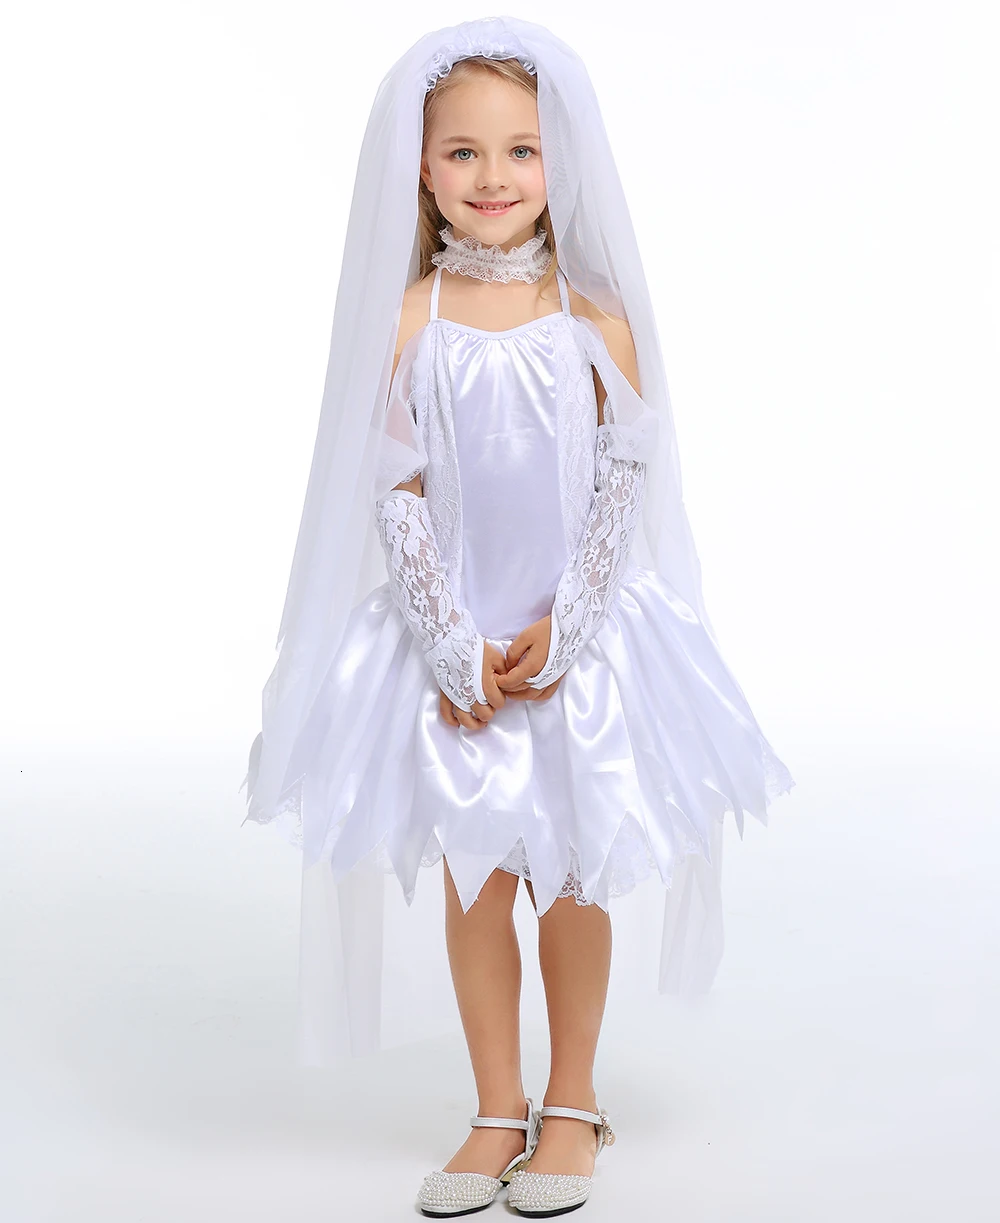 Хеллоуин Девушки Снег ангельское Платье Необычные Косплей партии Детская одежда для детей Девушки Кружева белые платья костюмы для Пурима